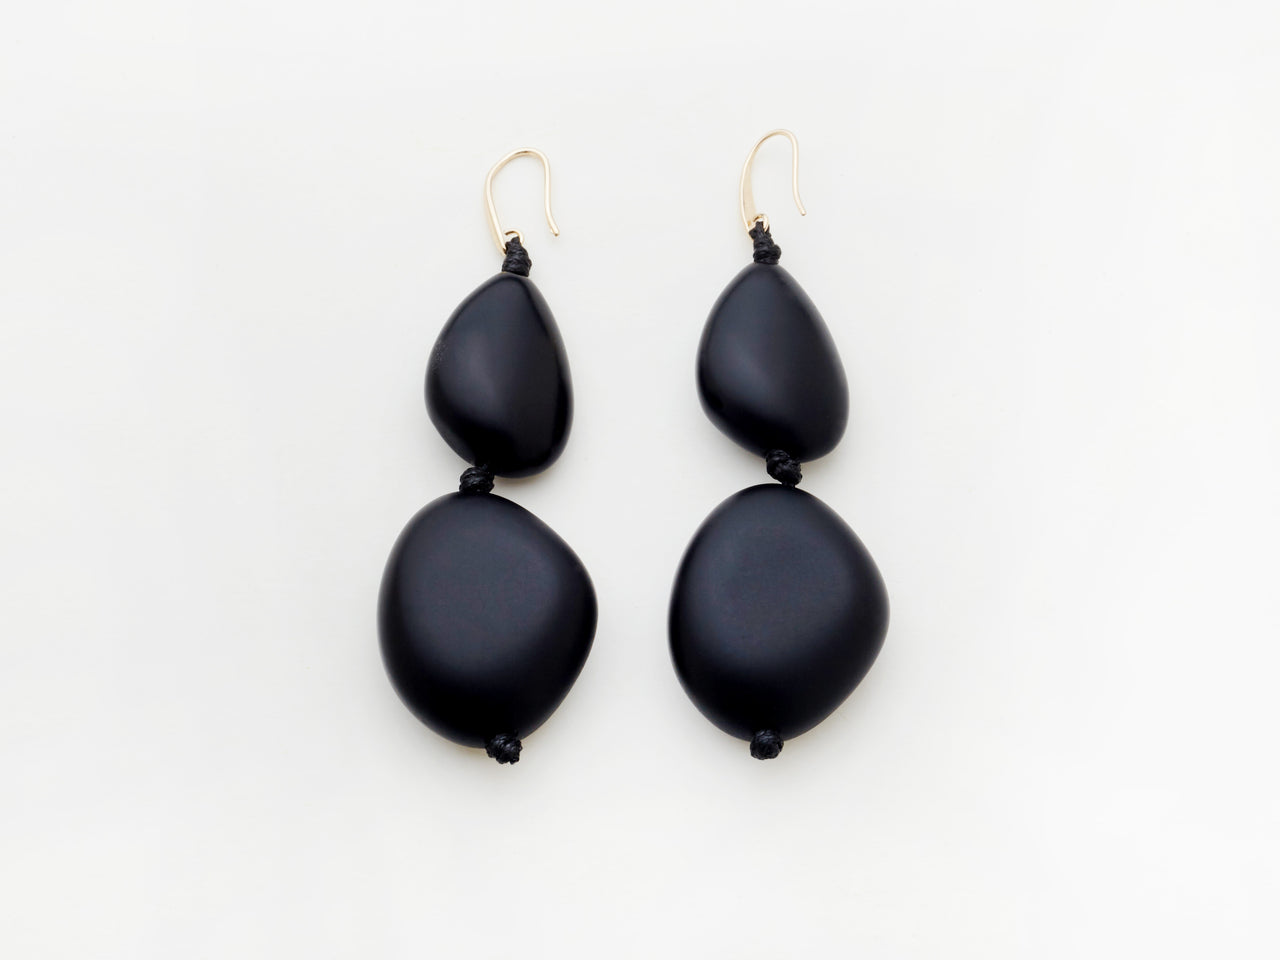 Pebble Earrings in Black